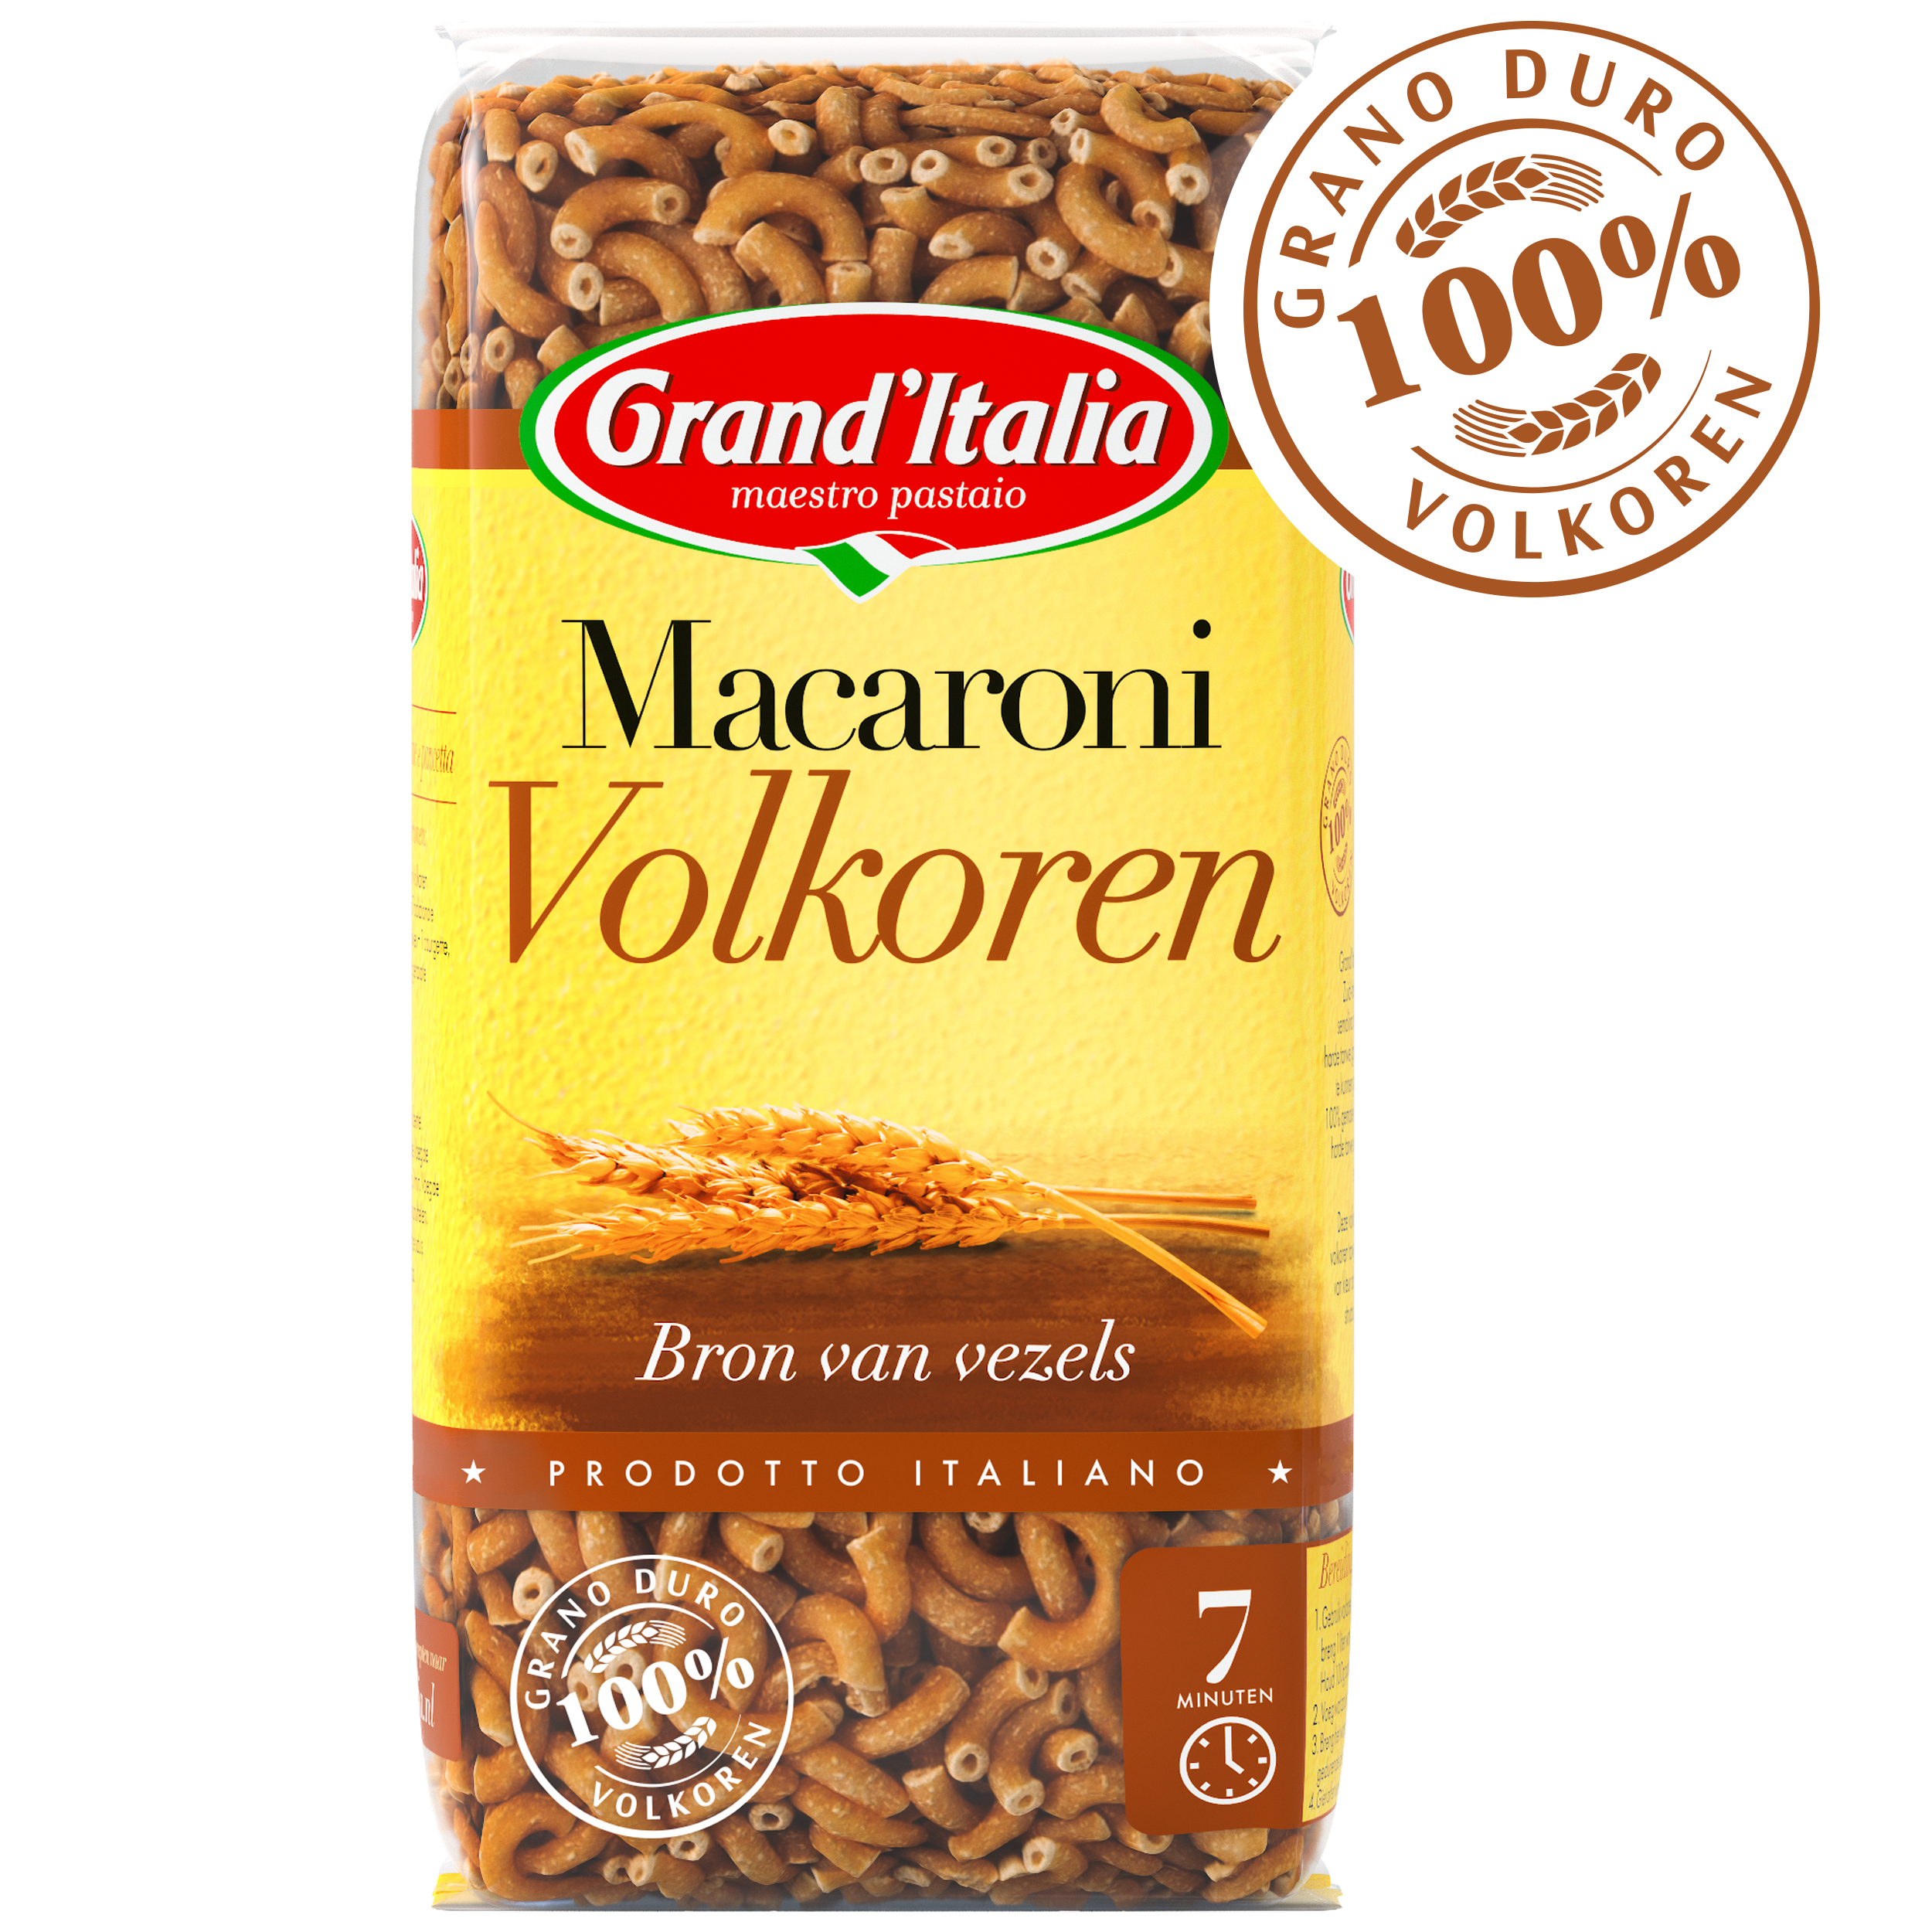 Pasta Macaroni Volkoren 500g claim Grand'Italia